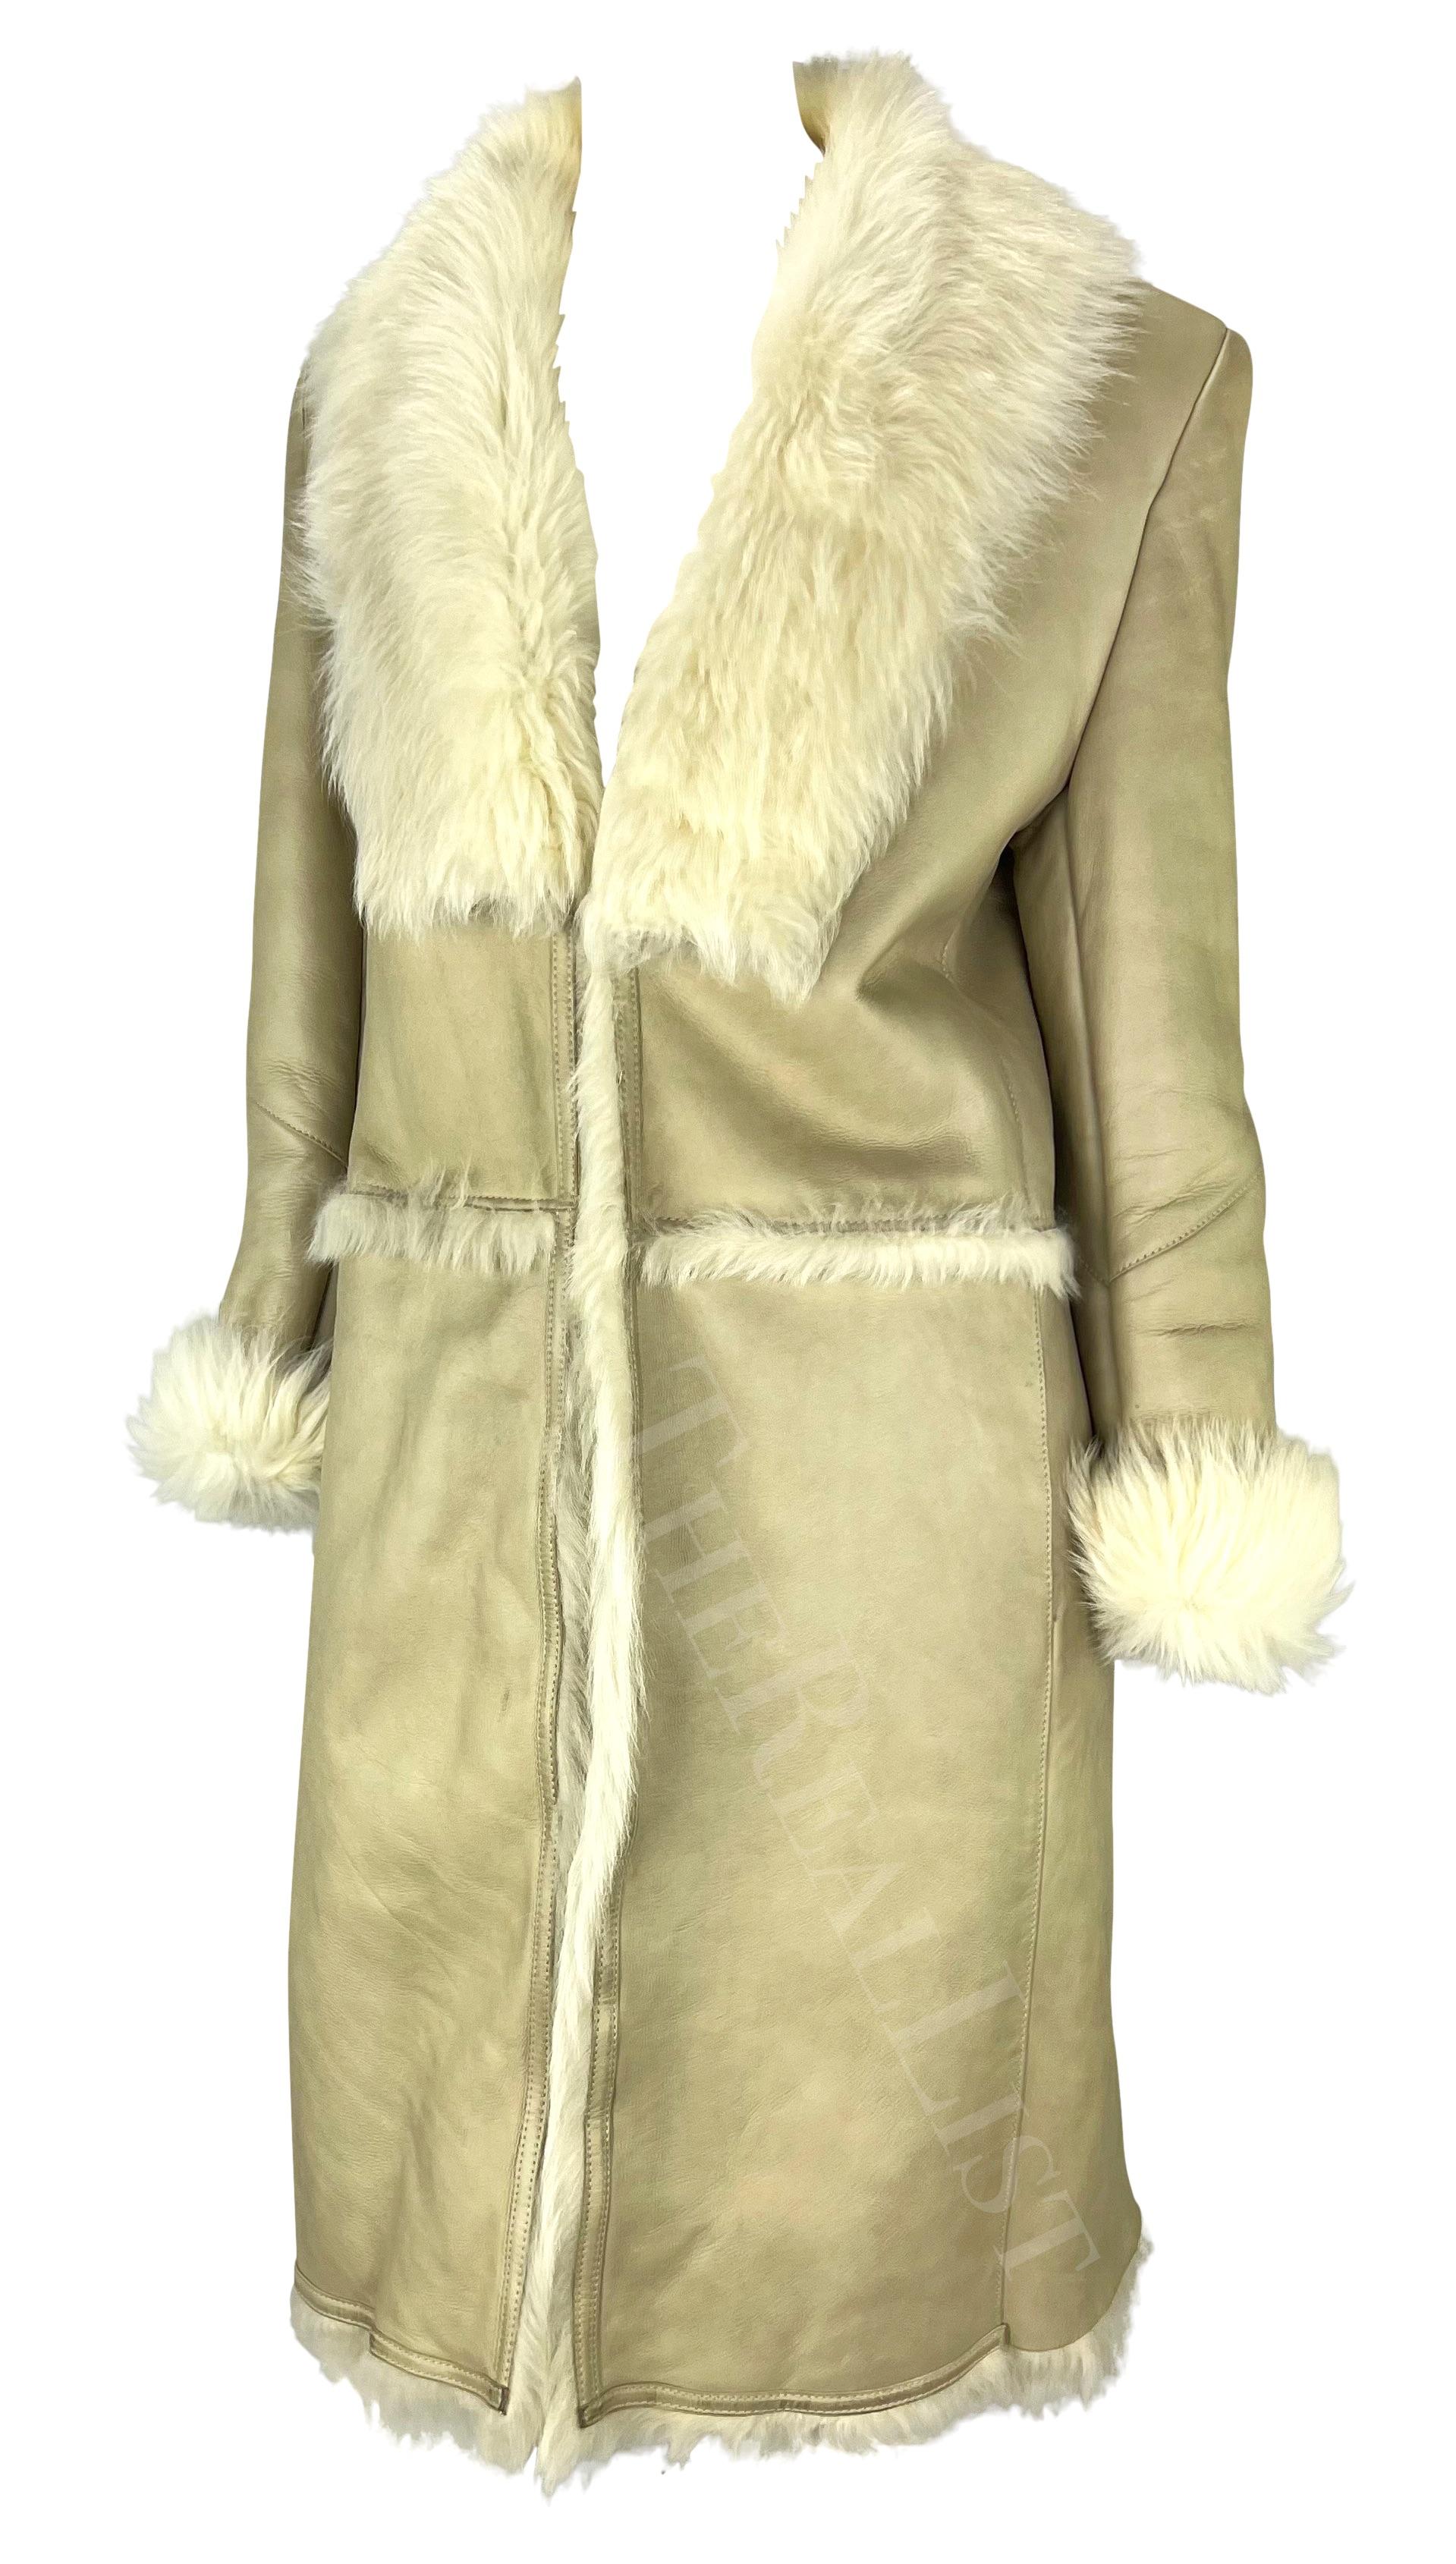 Présentation d'un magnifique manteau de fourrure en cuir Gucci beige, conçu par Tom Ford. Issu de la collection automne-hiver 1997, ce fabuleux trench-coat en shearling présente une fourrure qui se replie au niveau du col et des poignets. Kendall